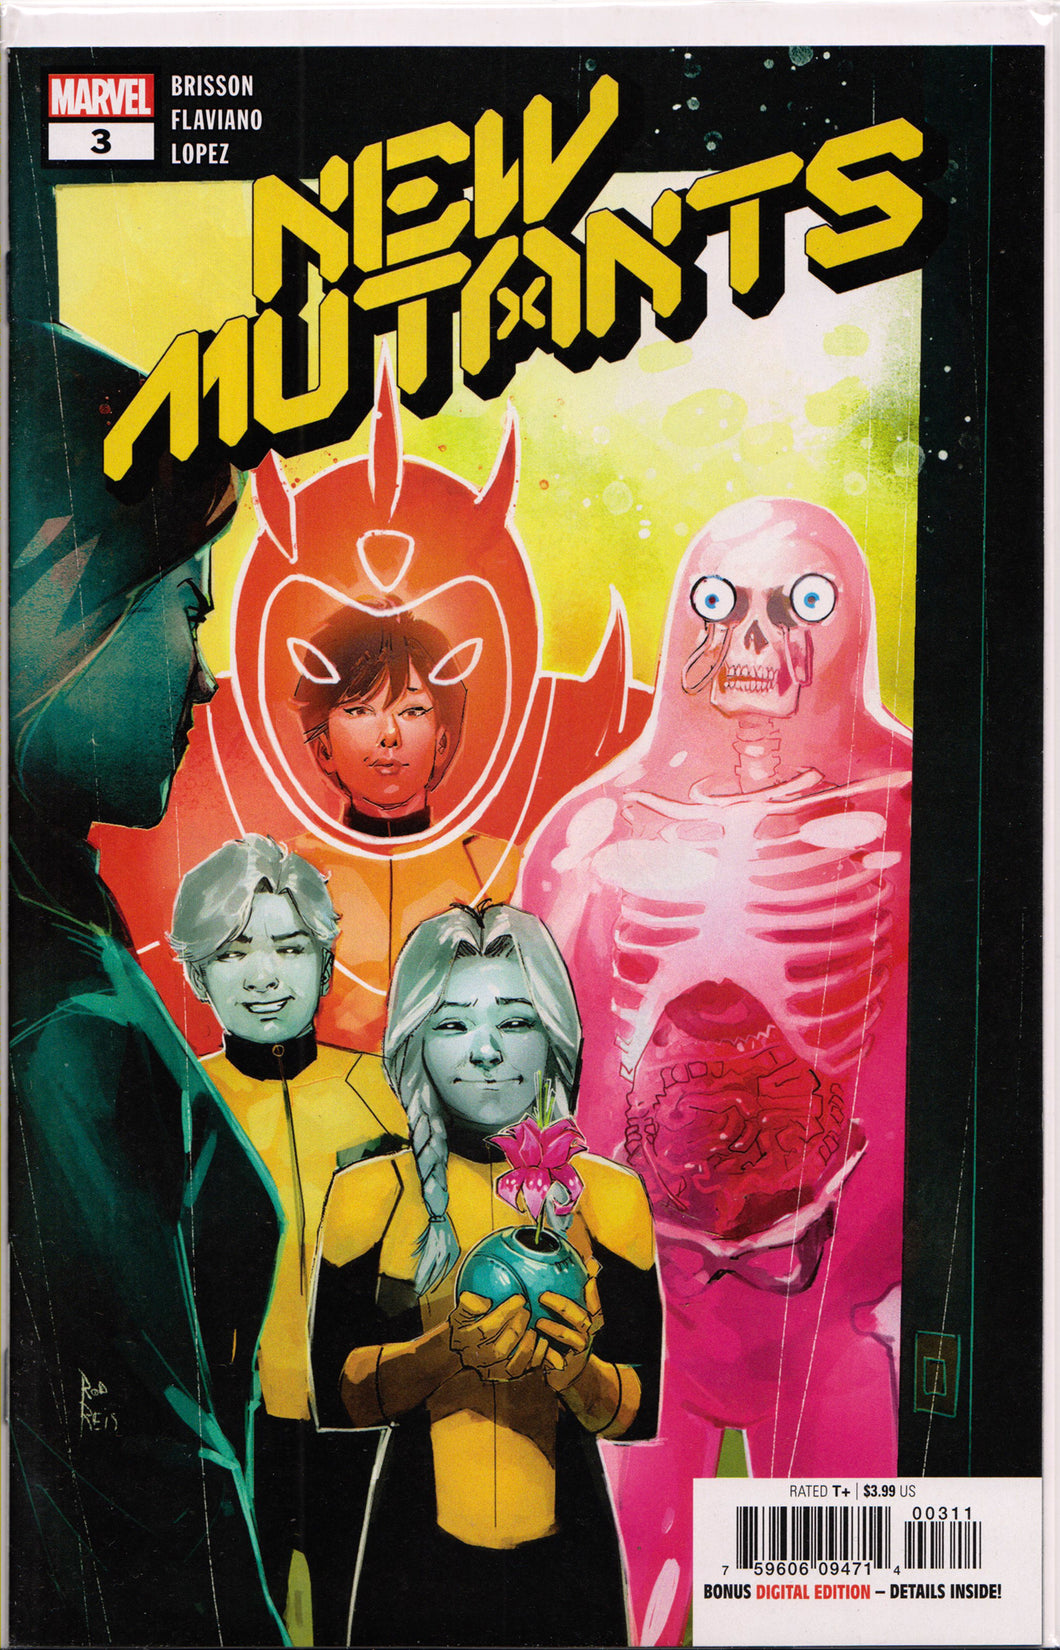 NEW MUTANTS #3 (1ST PRINT) COMIC BOOK ~ Marvel Comics